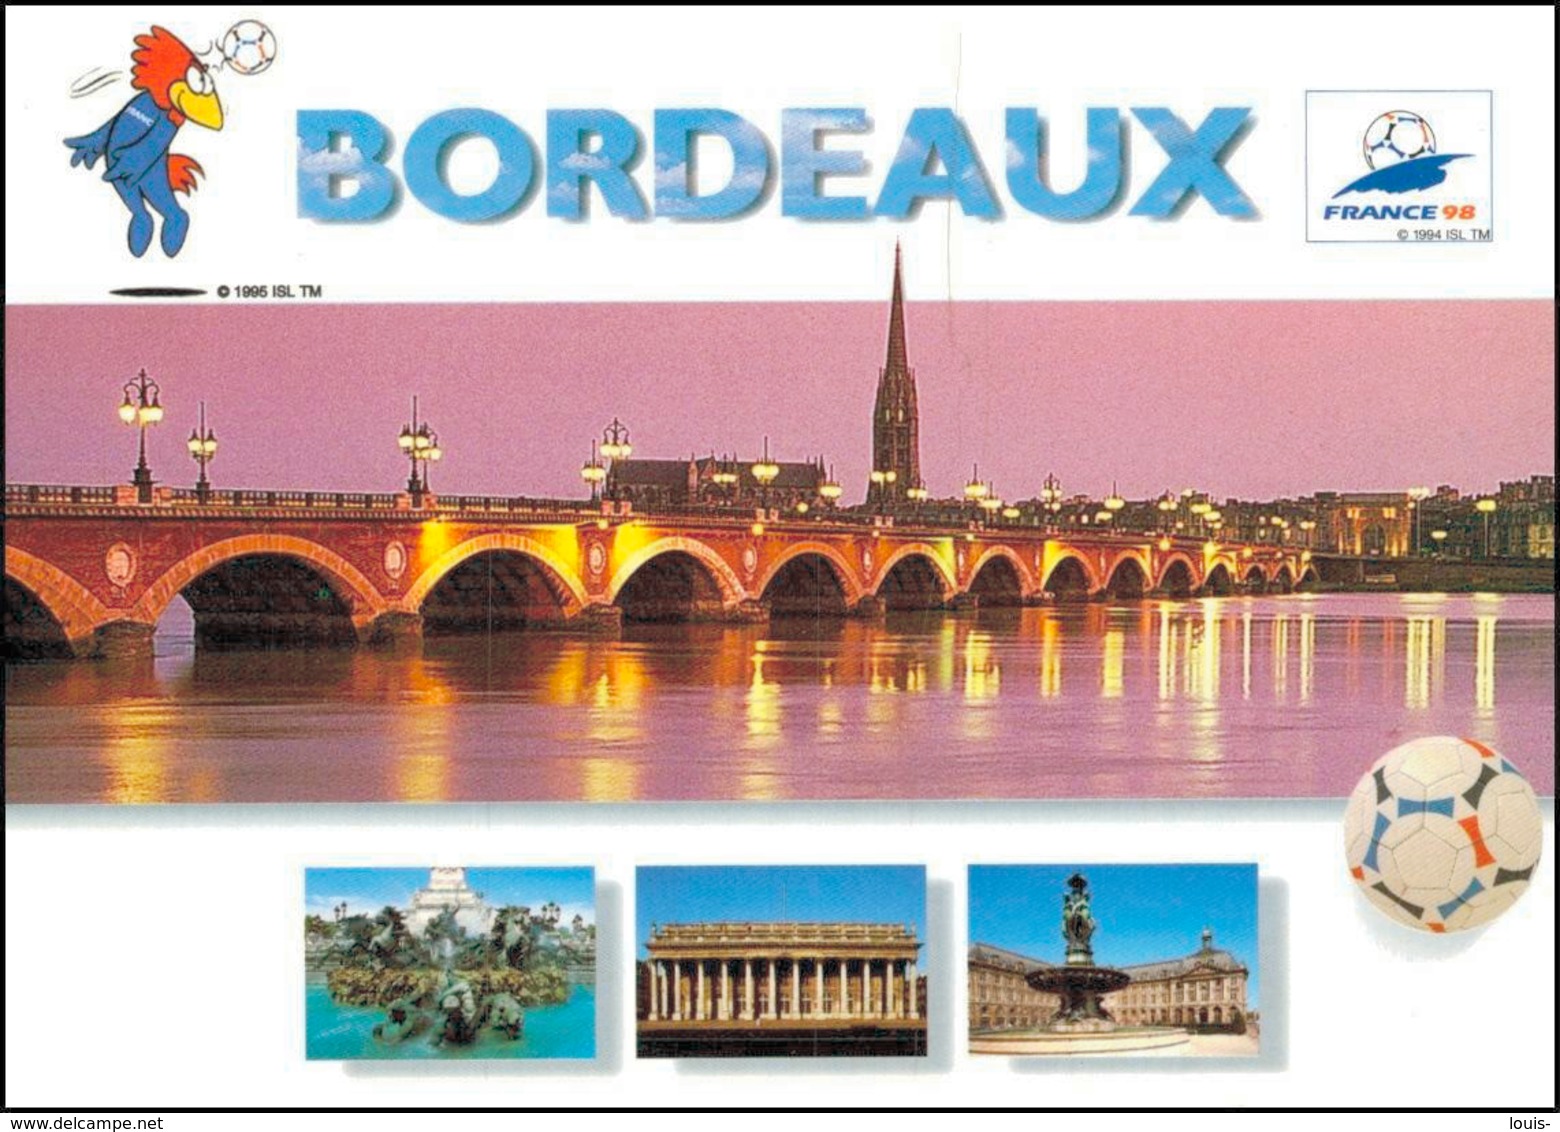 32- BORDEAUX - FRANCE 98 - Bordeaux